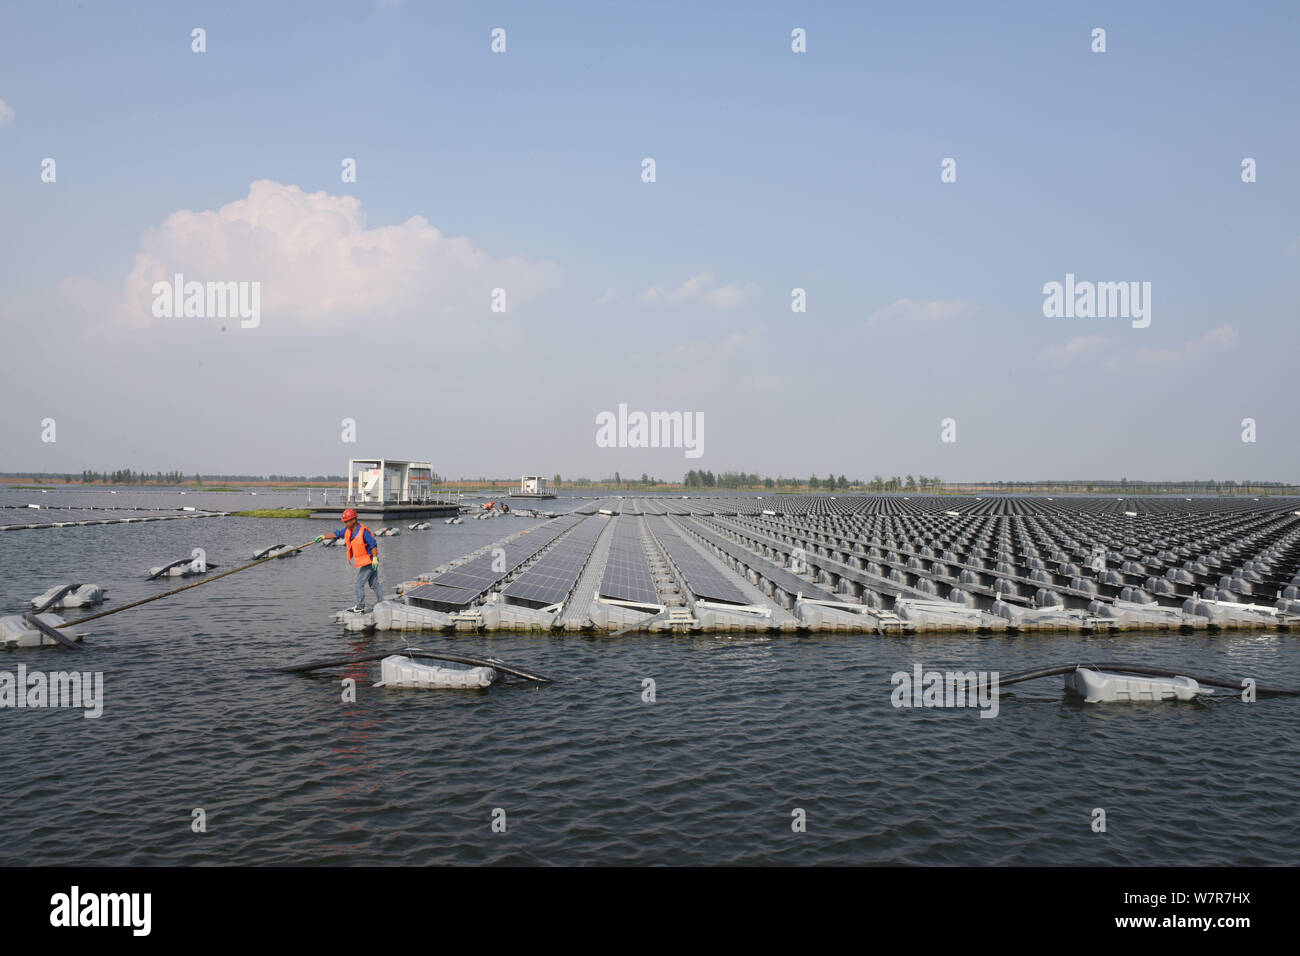 Afficher des panneaux solaires dans la plus grande usine de l'énergie solaire flottante d'une capacité de 40 mégawatts d'énergie dans la ville de Huainan, à l'est l'Anhui en Chine Banque D'Images